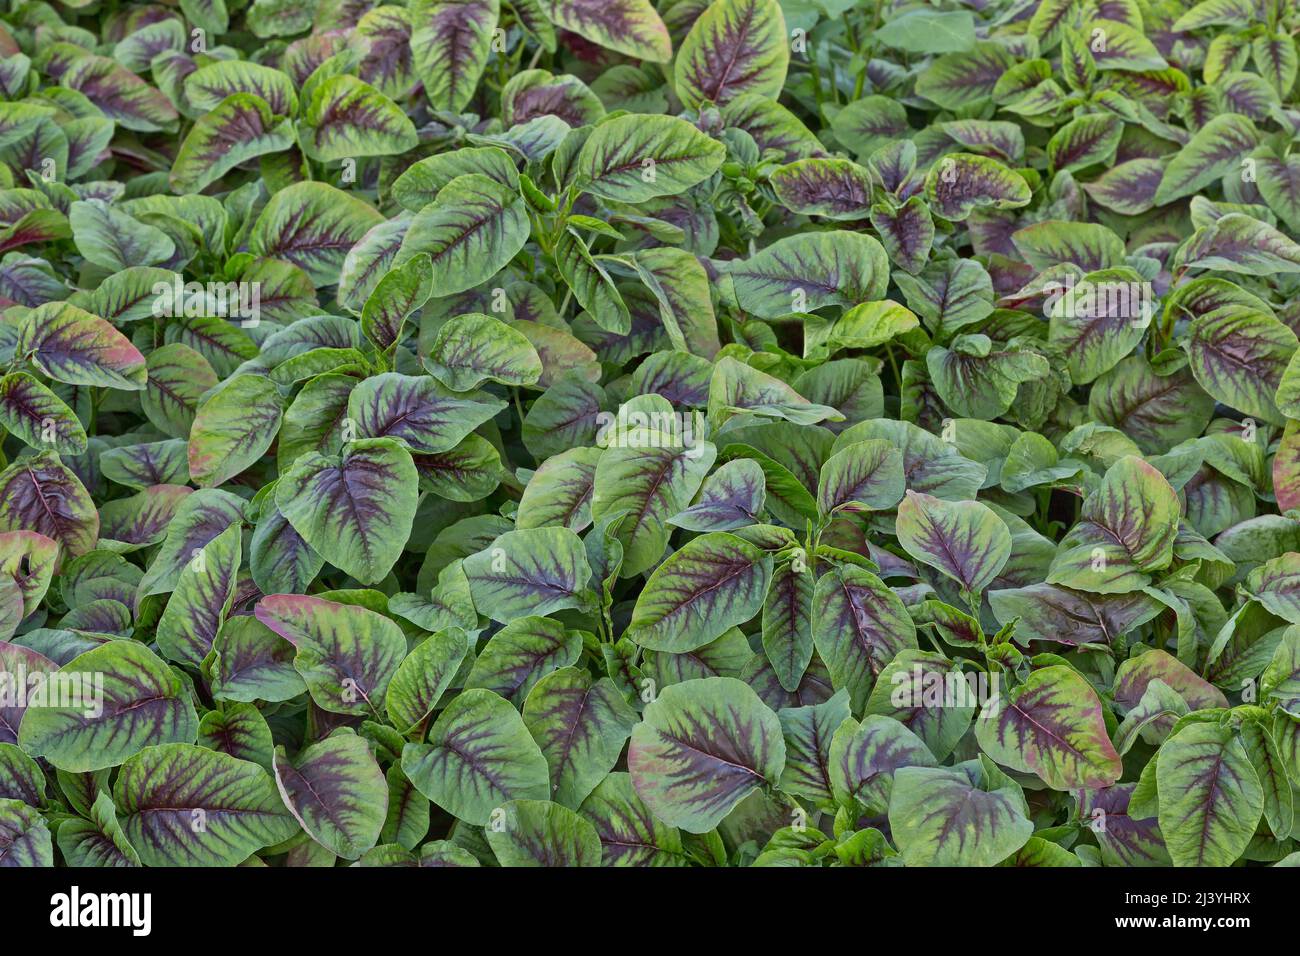 Amaranth edibla 'Yin Choy' , chinesischer Spinat, der im Gewächshaus in Kalifornien wächst. Stockfoto